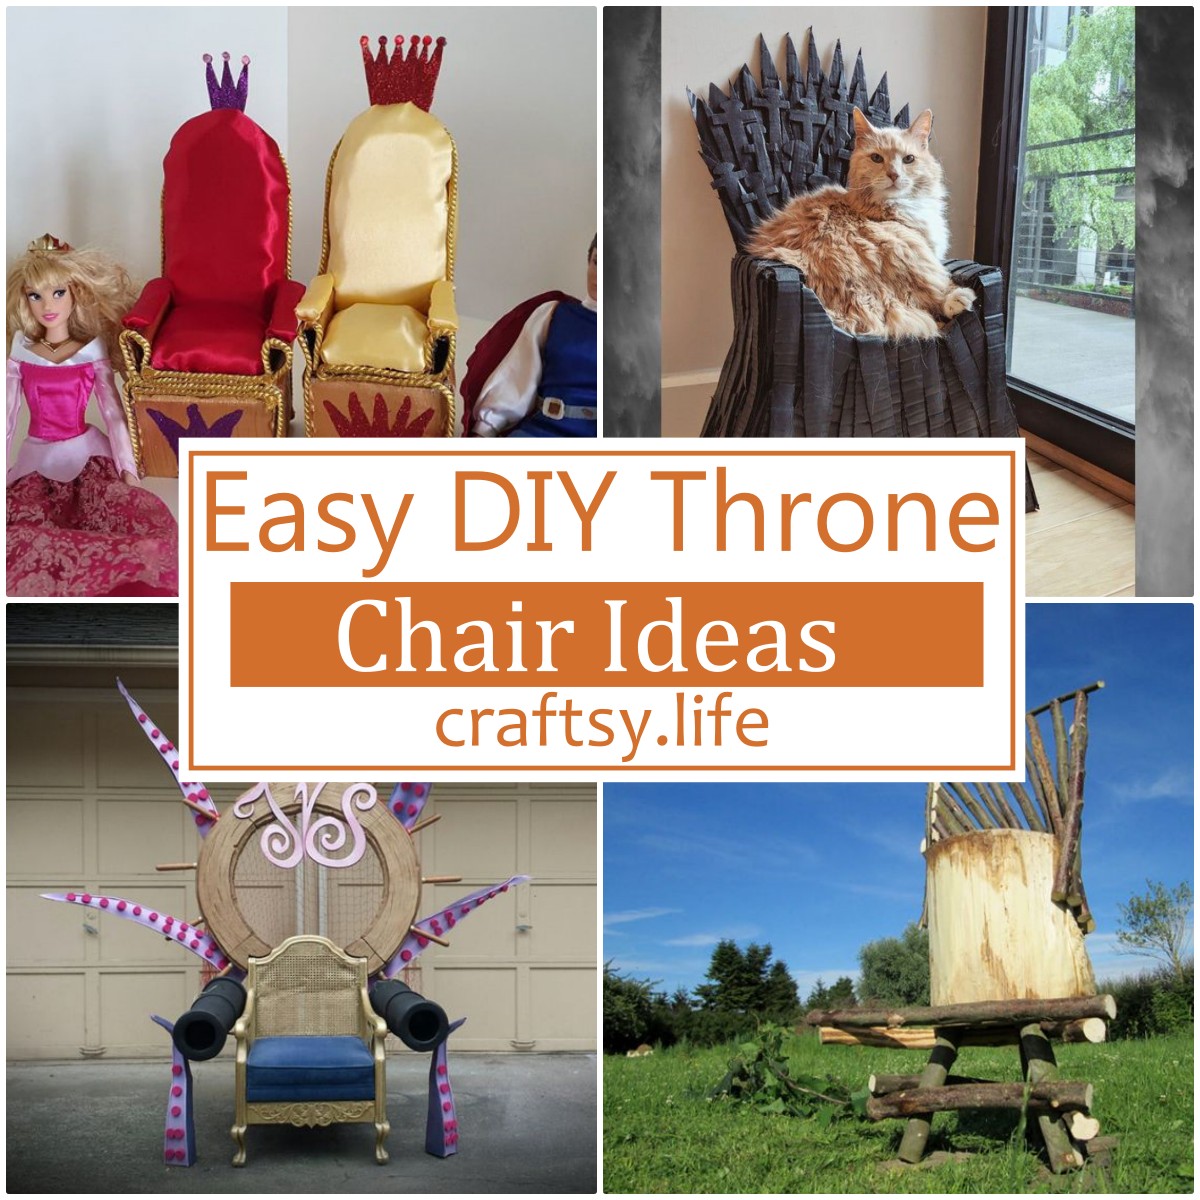 15 Easy Diy Throne Chair Ideas Craftsy